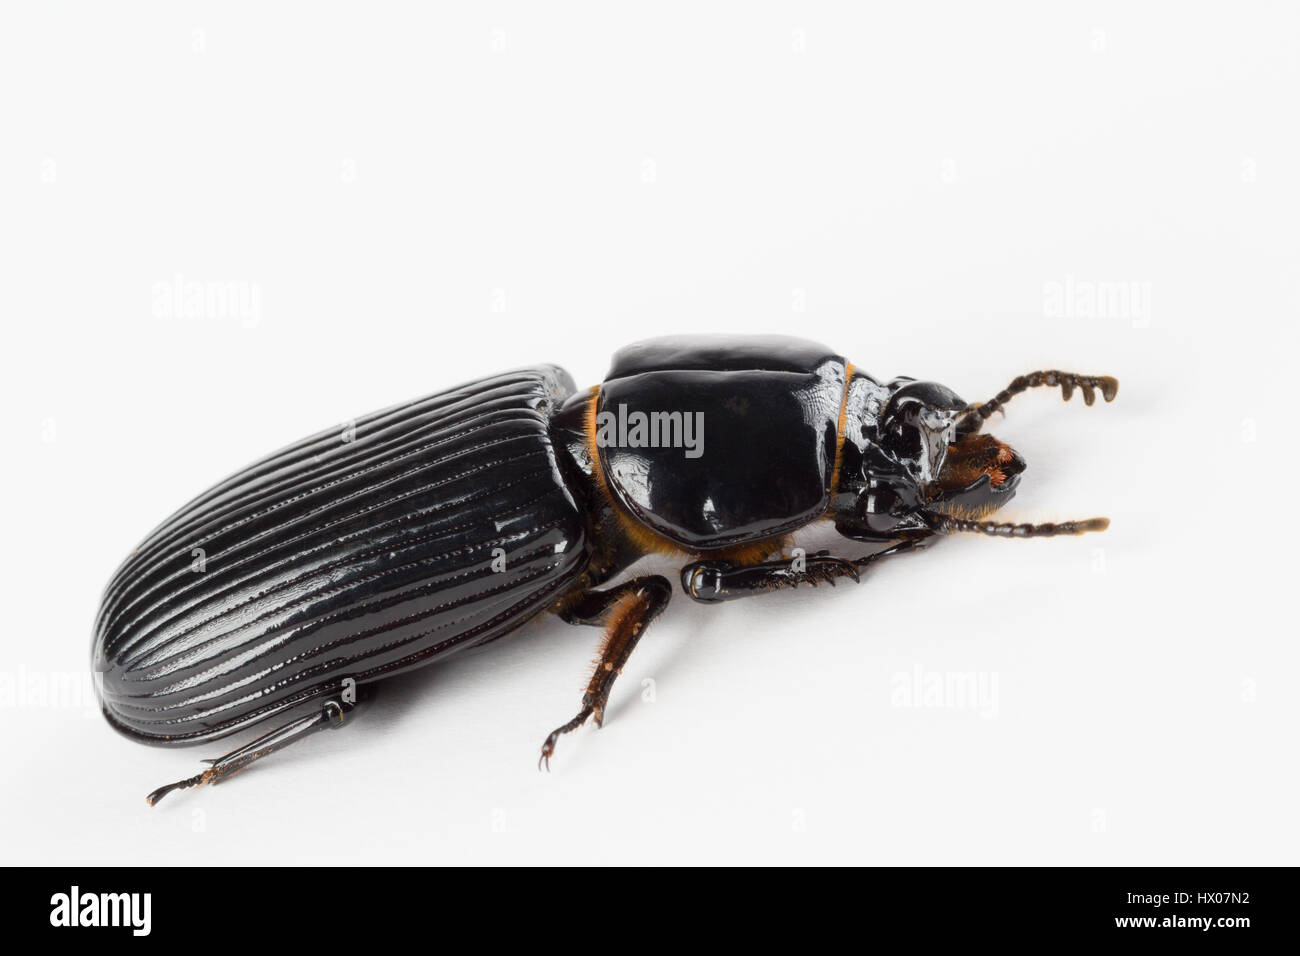 Chiusura del lucido nero cornuto scarabeo scarabeo con golden orange peli, probabile Odontotaenius disjunctus, trovati nella Carolina del Nord. Foto Stock